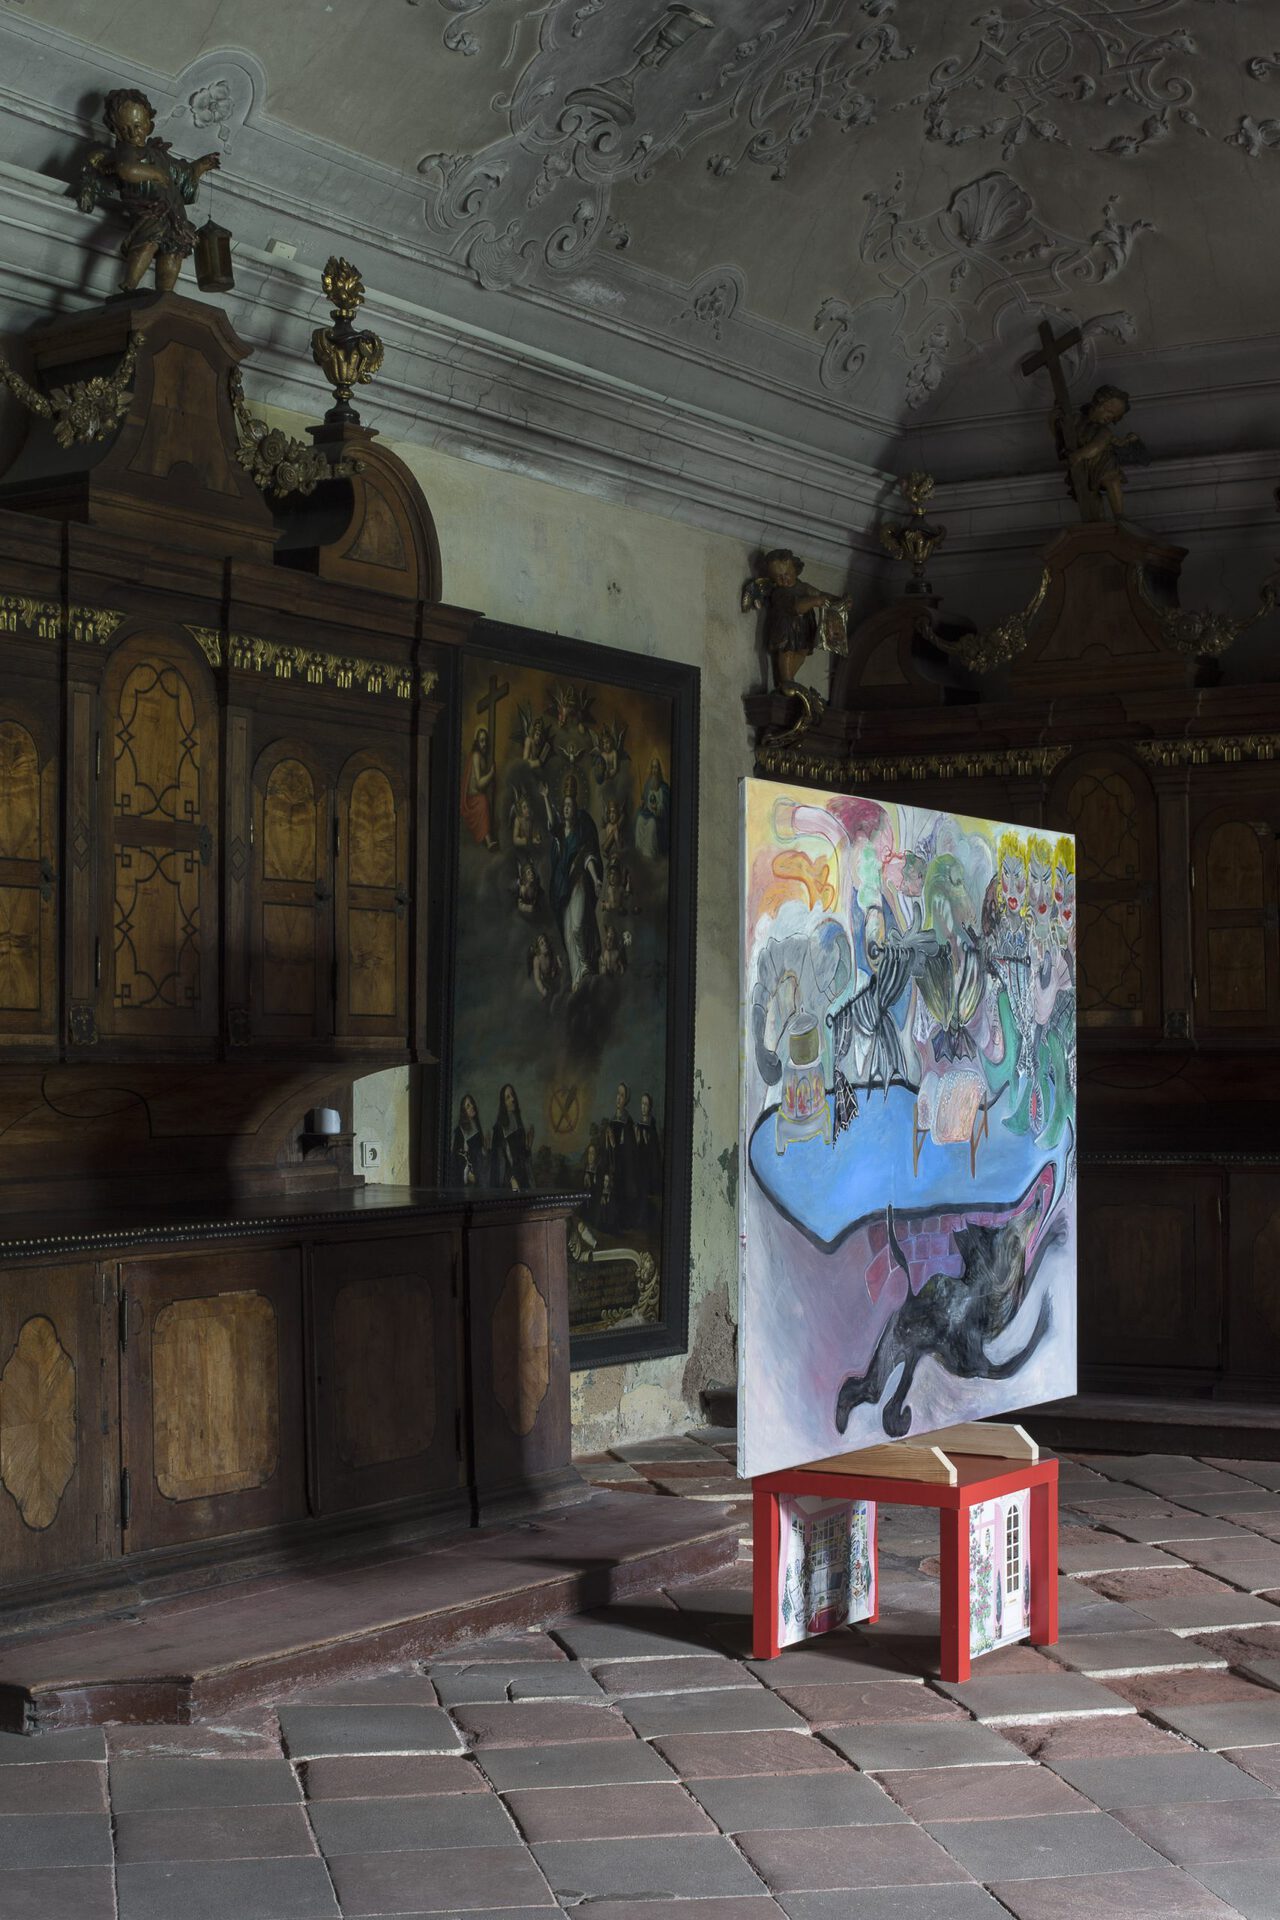 Kamilla Bischof, Geschichten aus dem Gardinenwald / Tales from the Curtain Woods, 2020 oil on canvas 150 × 180 cm  courtesy of the artist and Sandy Brown Gallery, Berlin